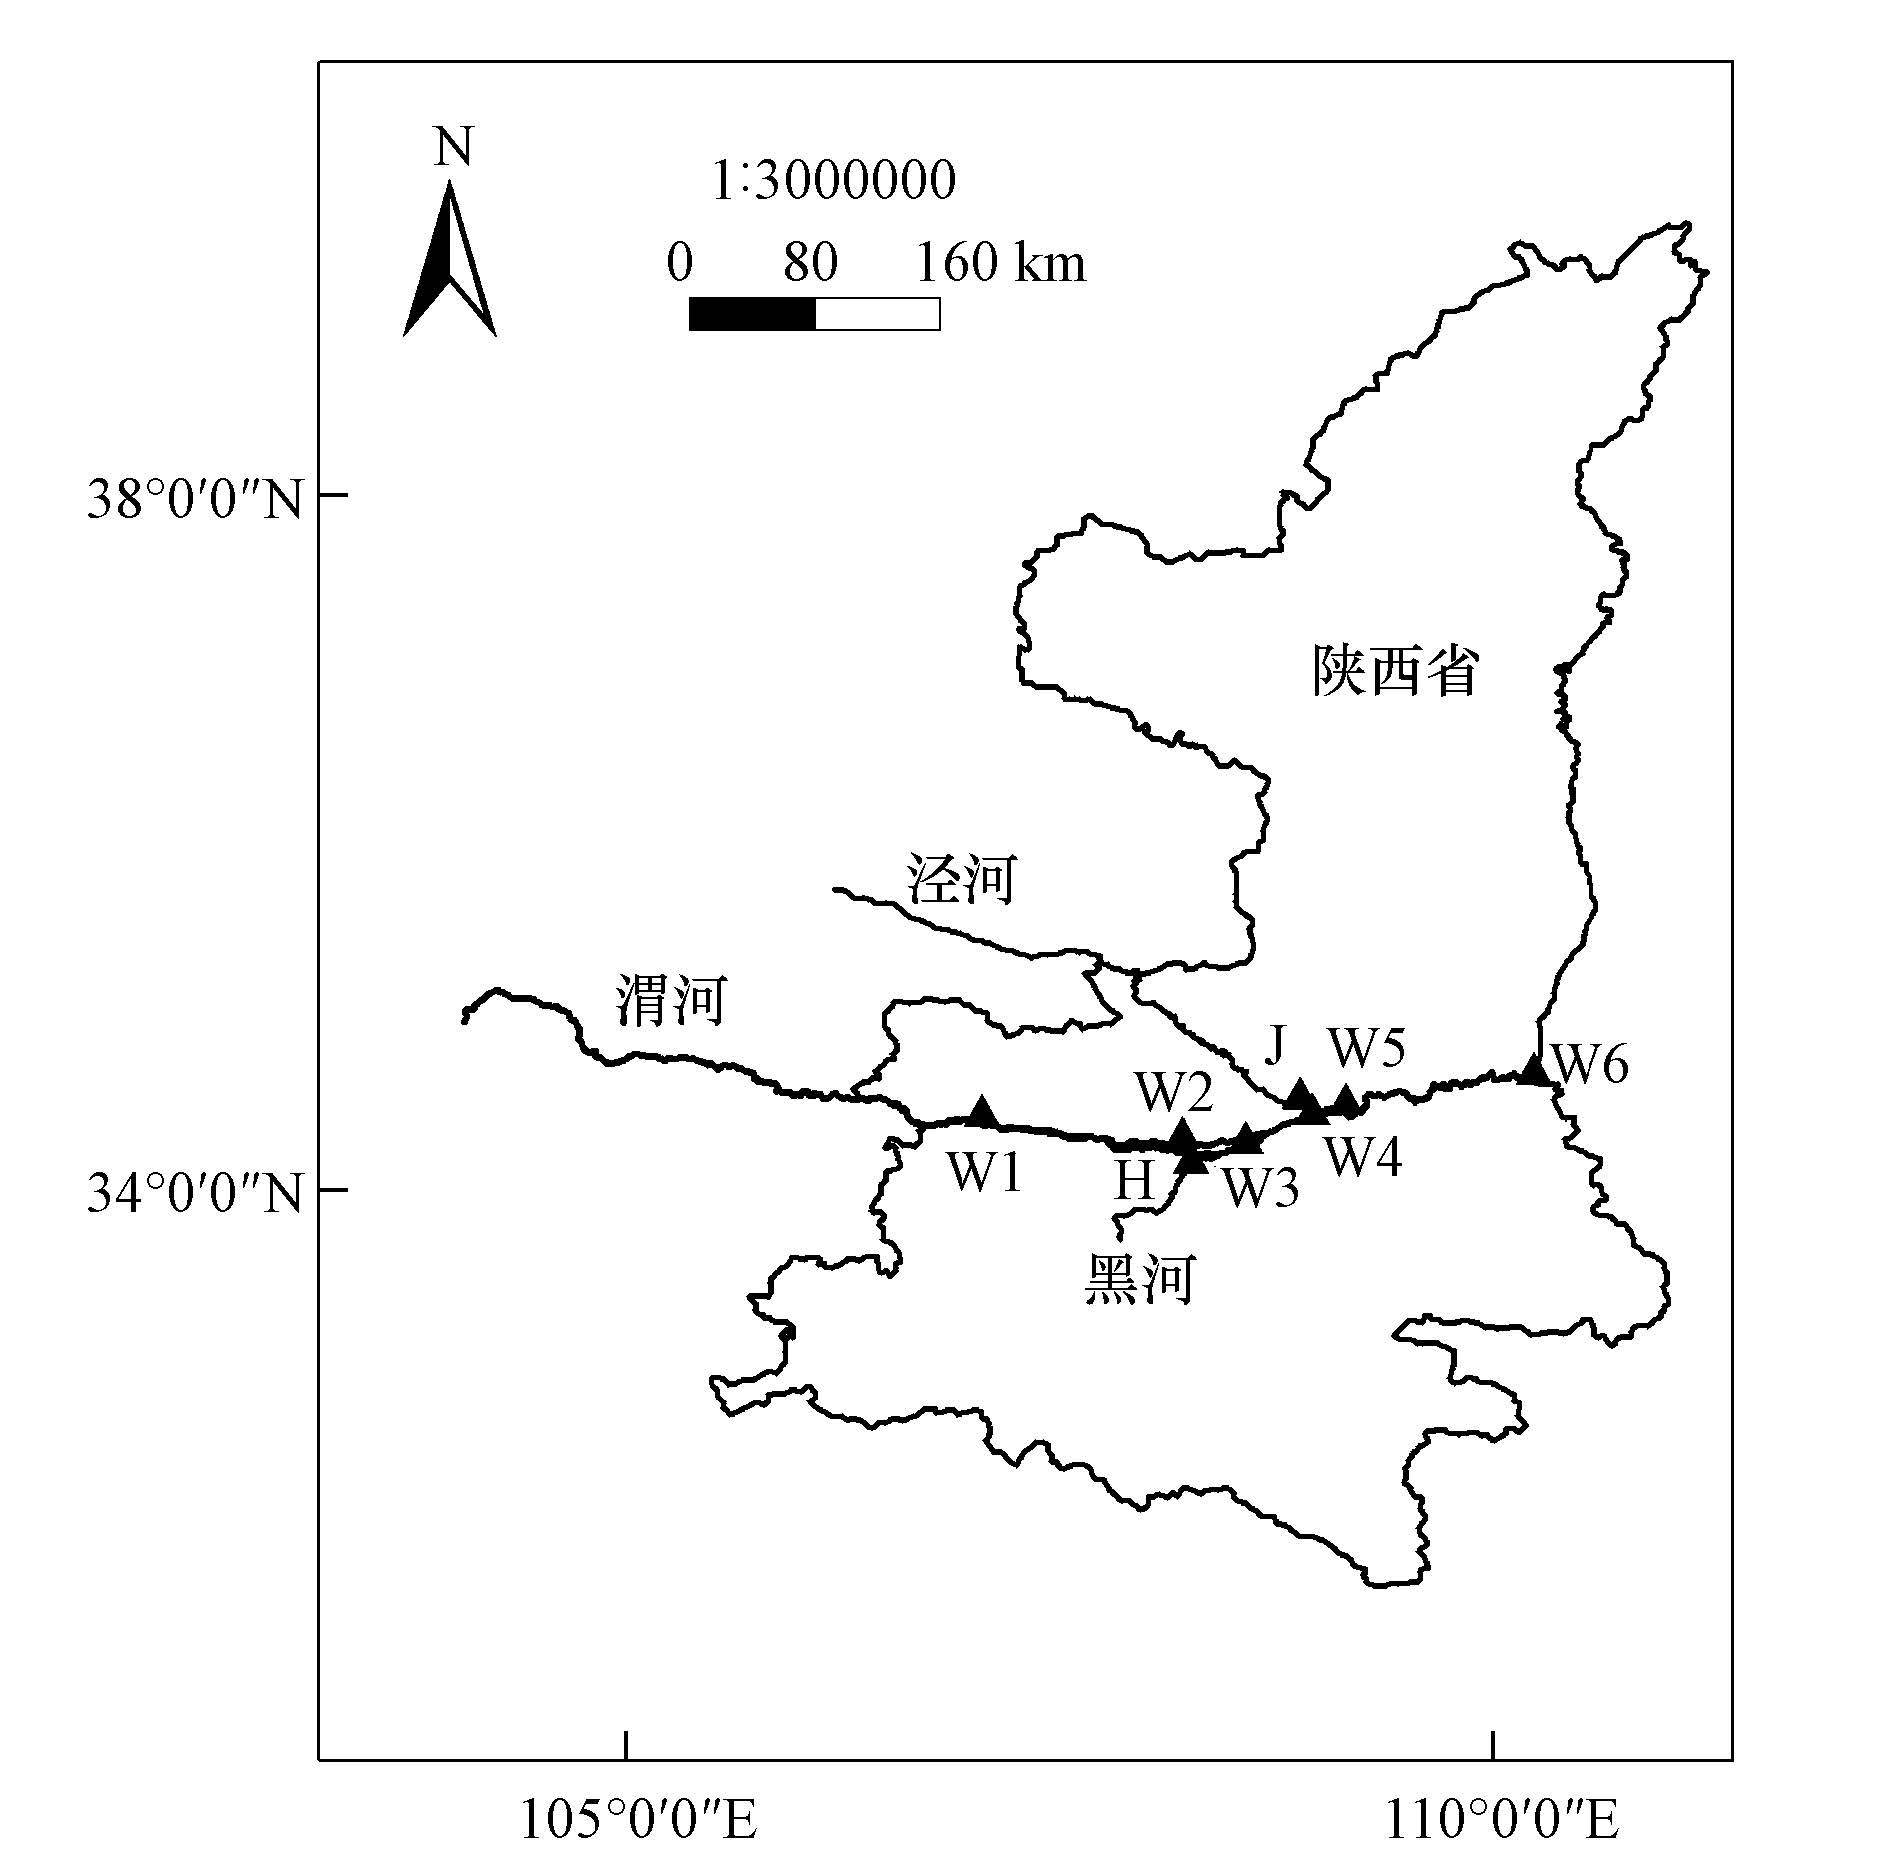 泾河地图图片